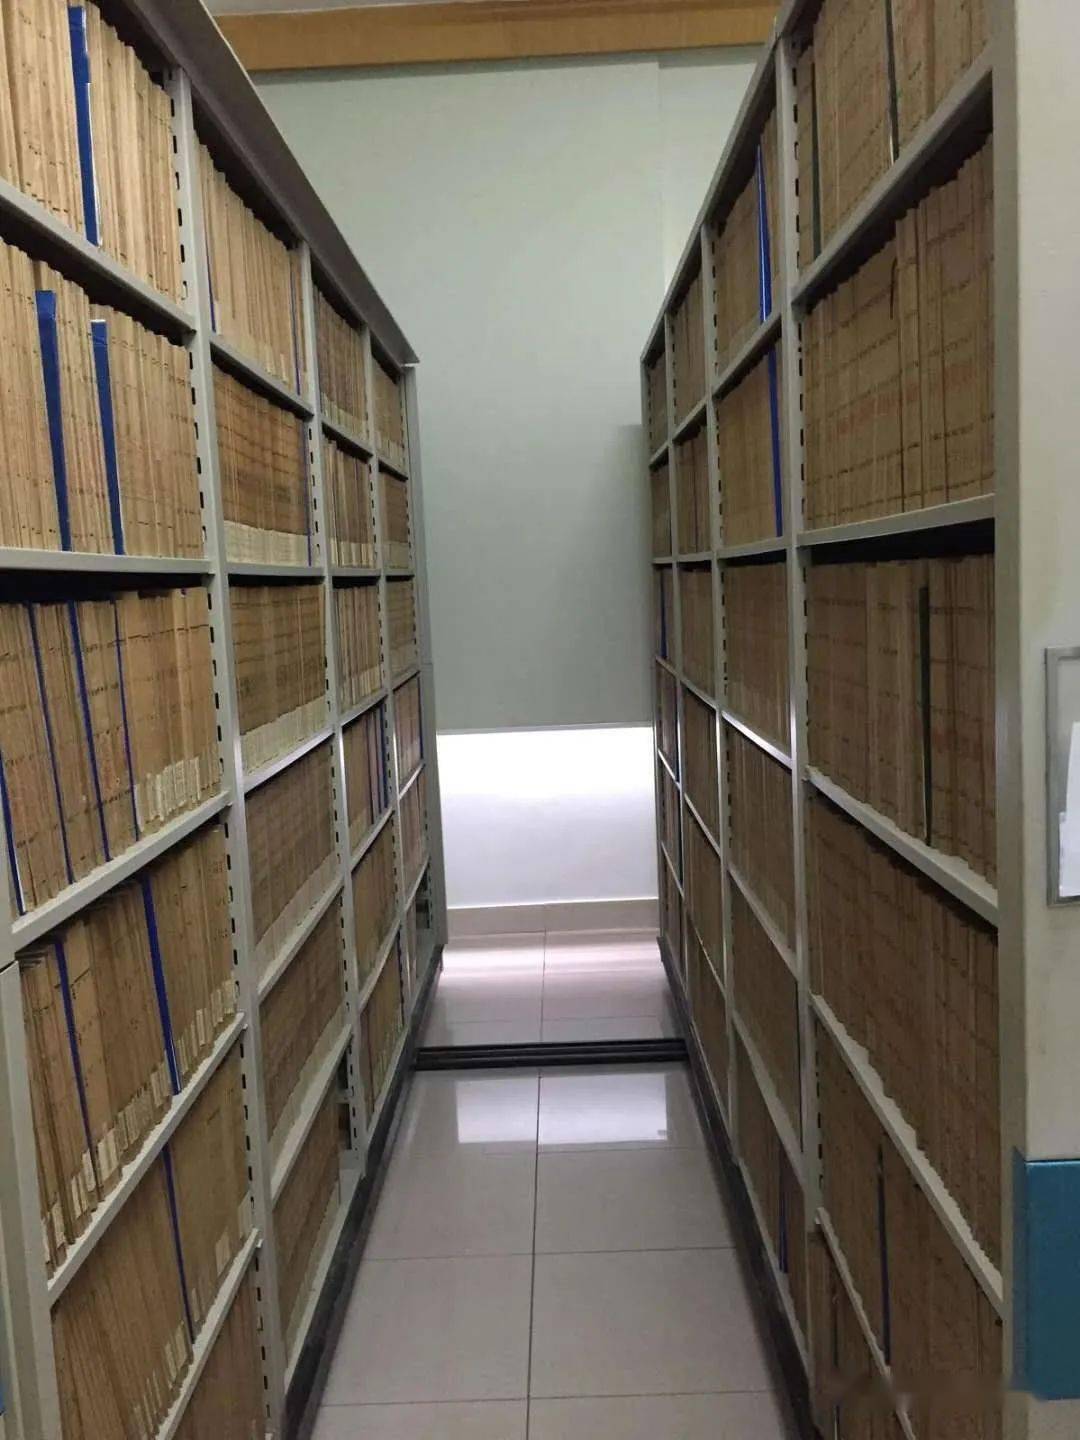 将教体系统管理的2730卷干部人事档案全部安全转运至区委组织部档案室